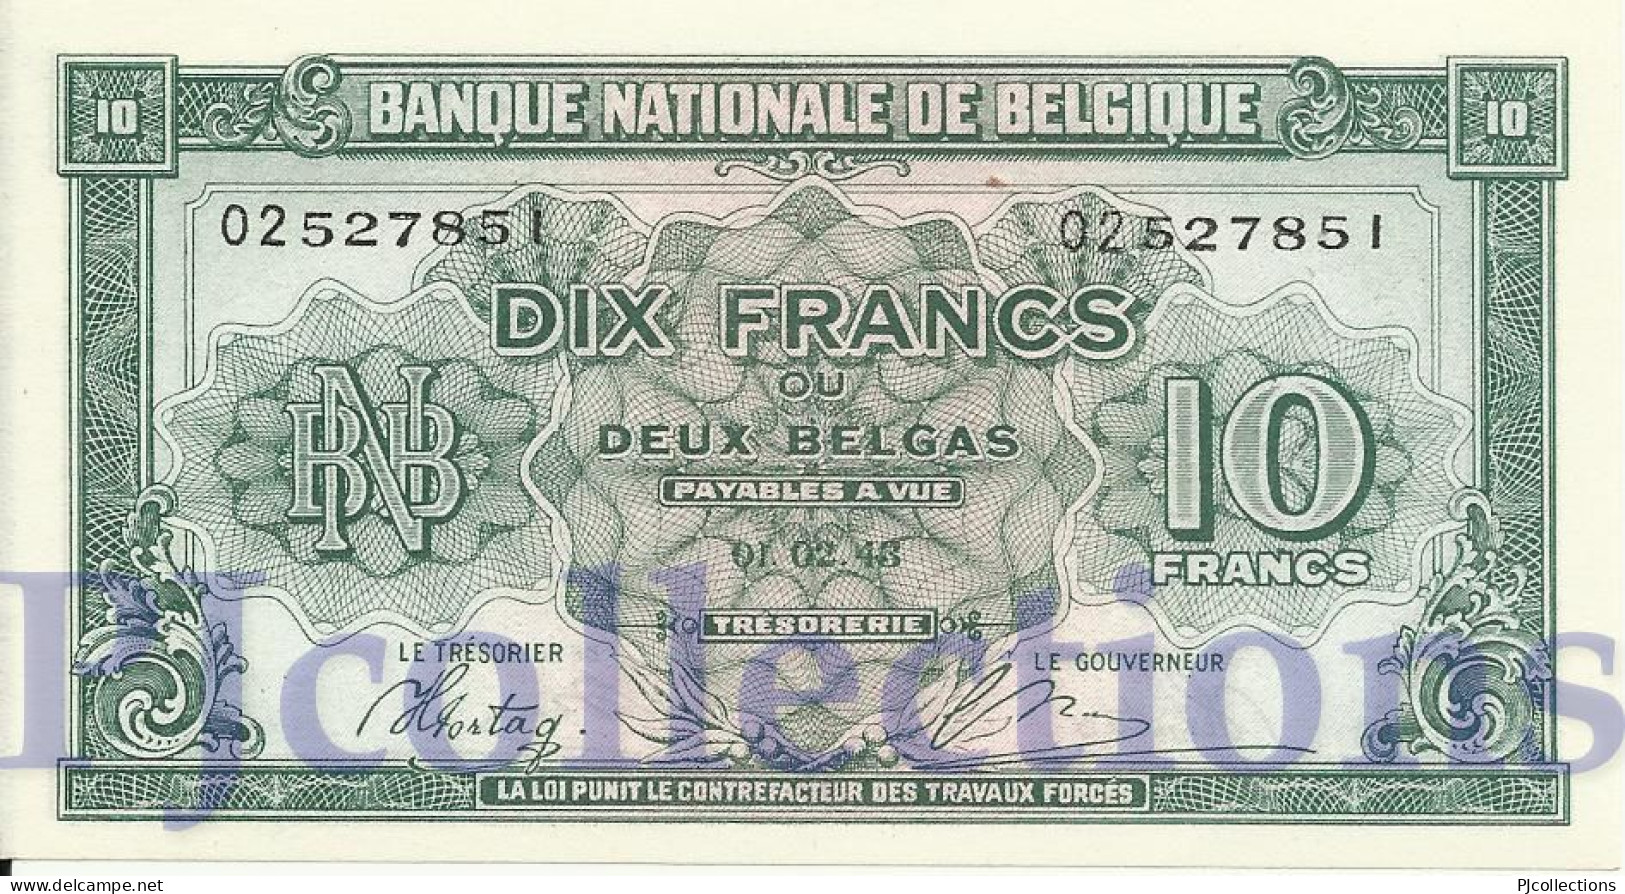 BELGIUM 10 FRANCS 1943 PICK 122 XF+ SERIES "A3" - 100 Francs